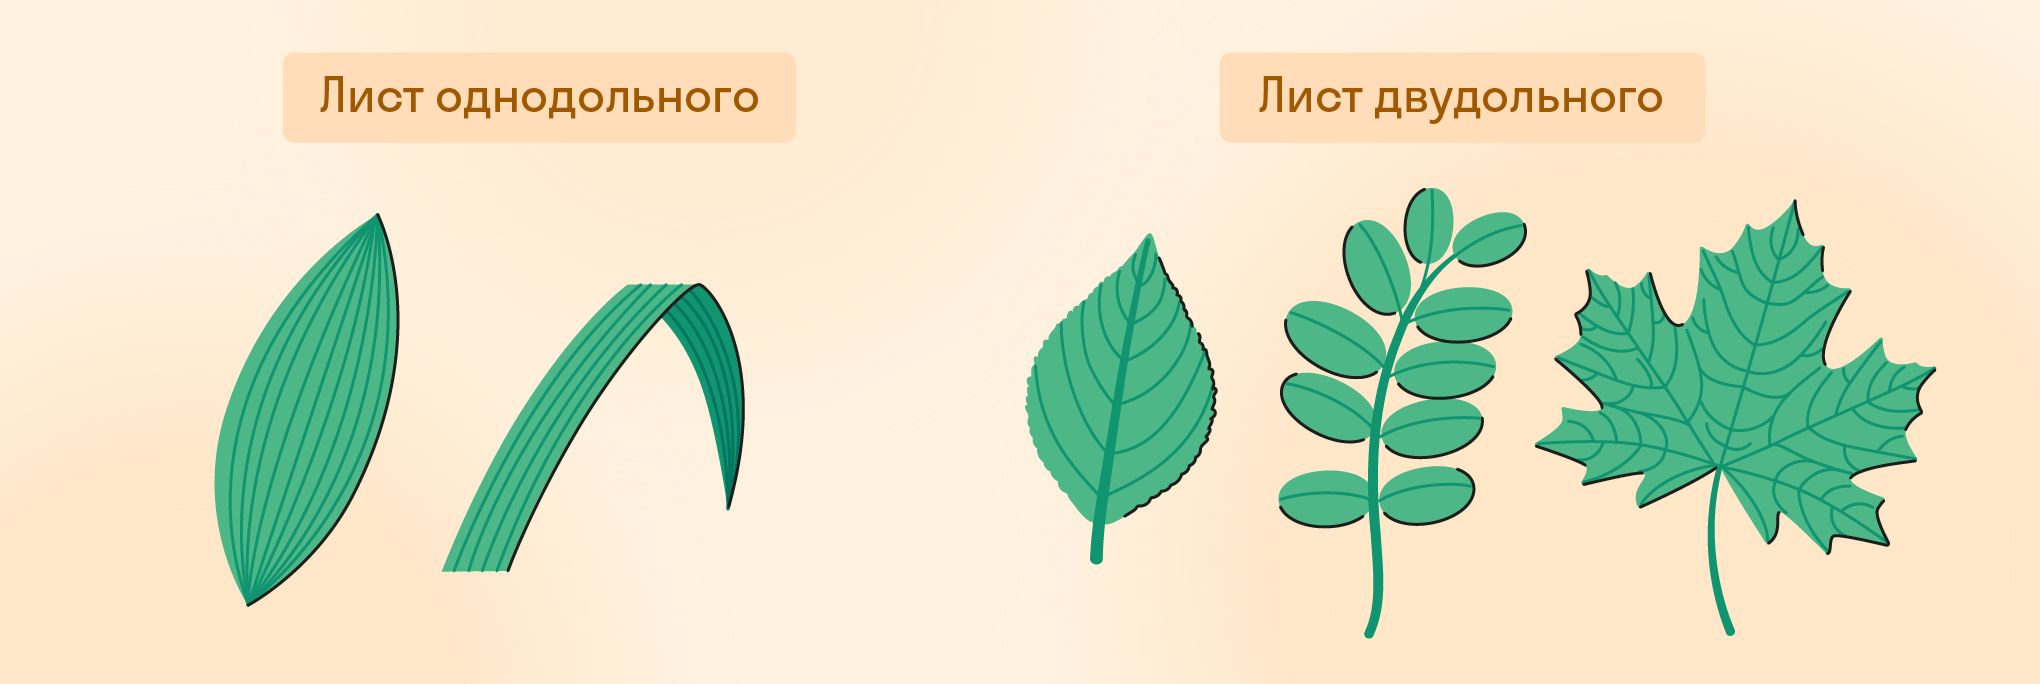 Листья однодольного и двудольного растений